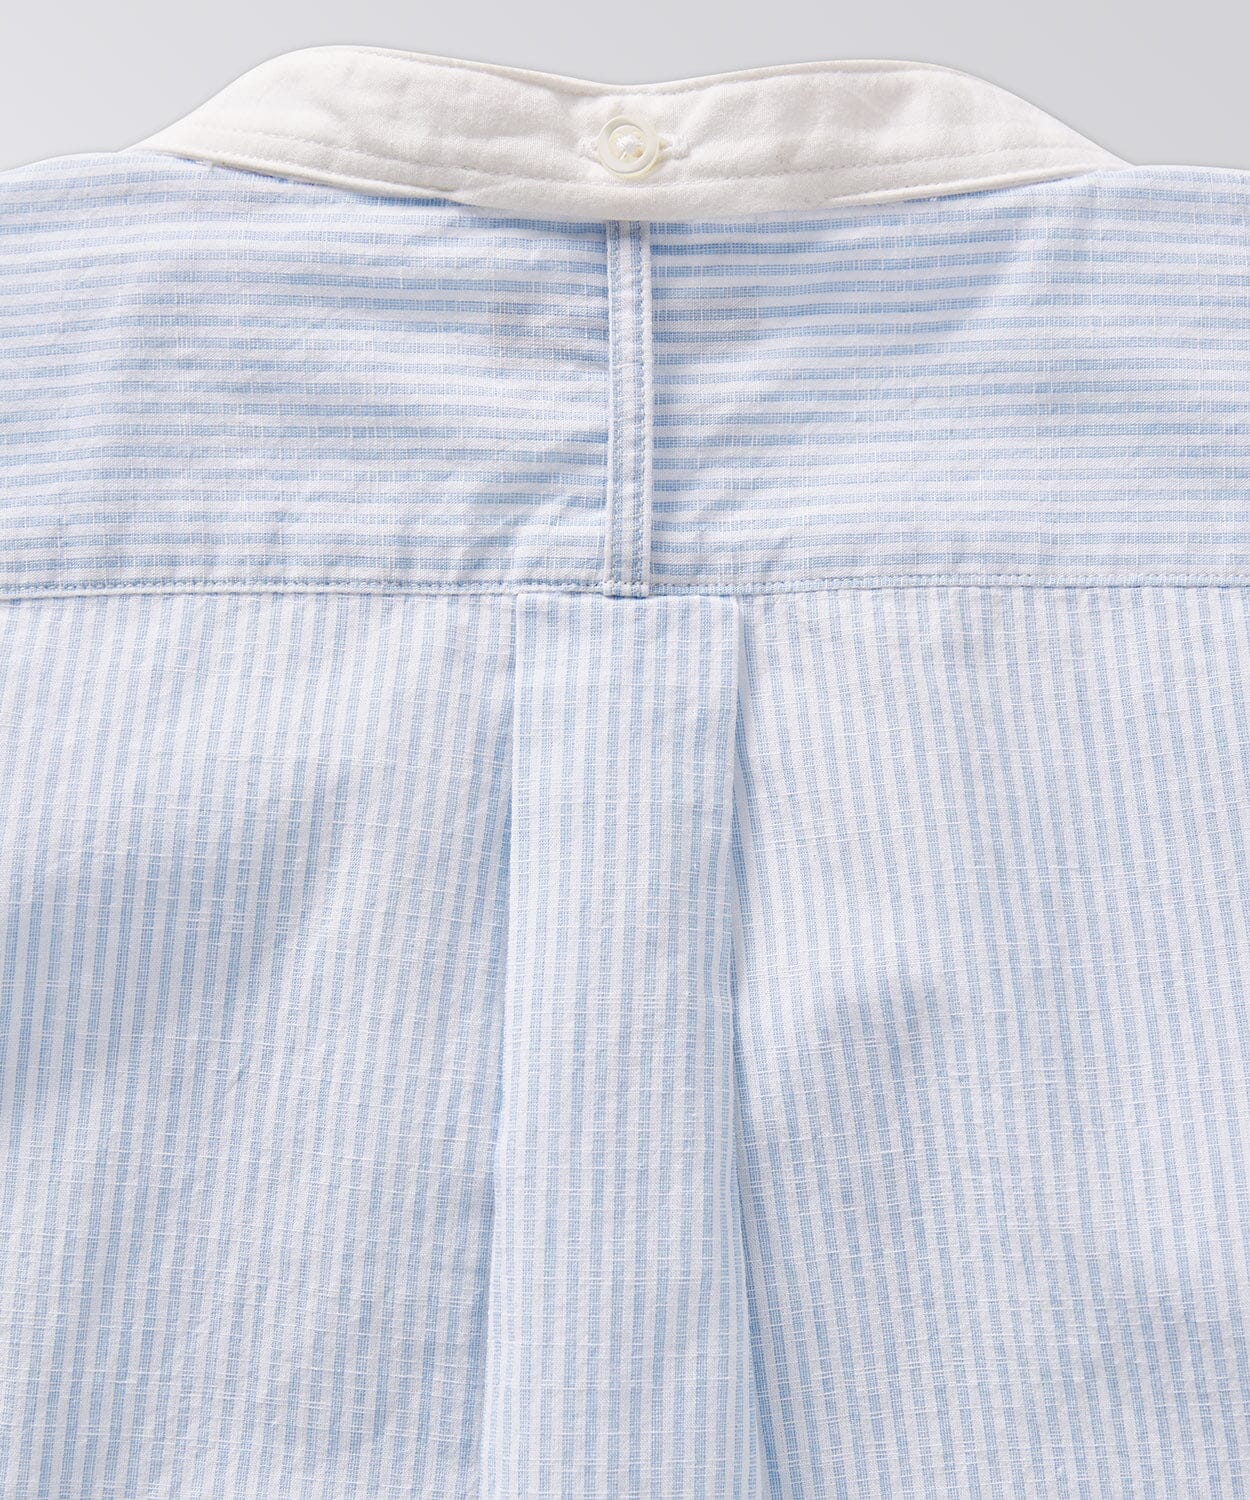 Rowan Shirt Button Downs OOBE BRAND 